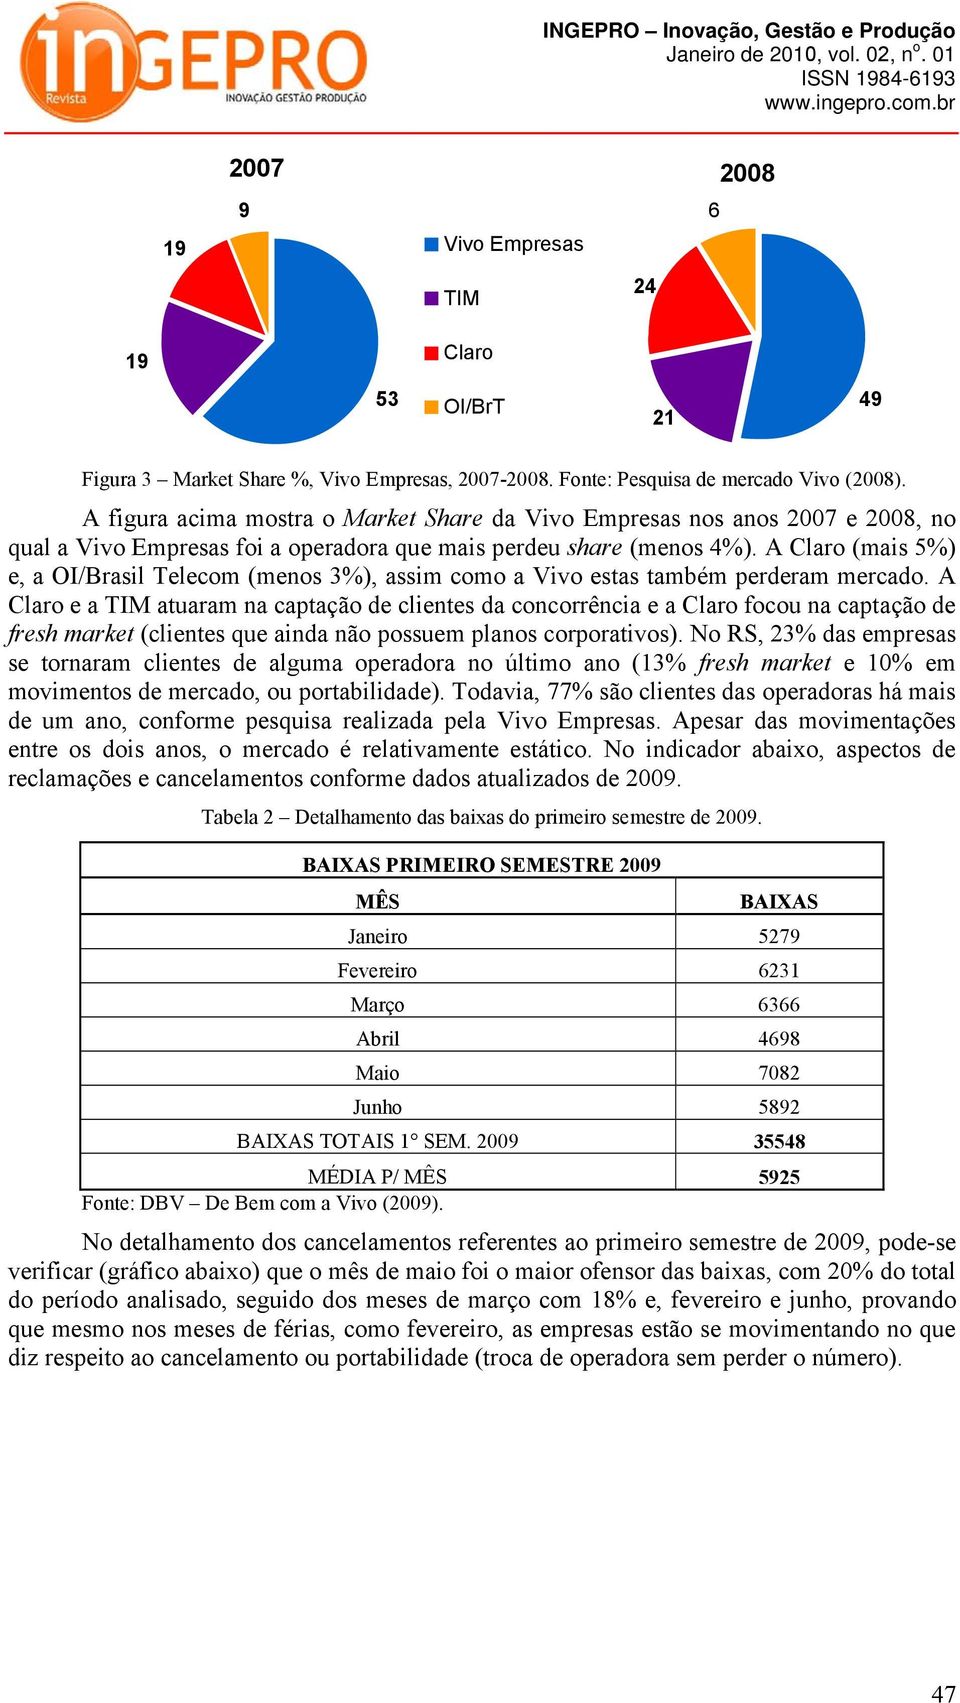 A Claro (mais 5%) e, a OI/Brasil Telecom (menos 3%), assim como a Vivo estas também perderam mercado.